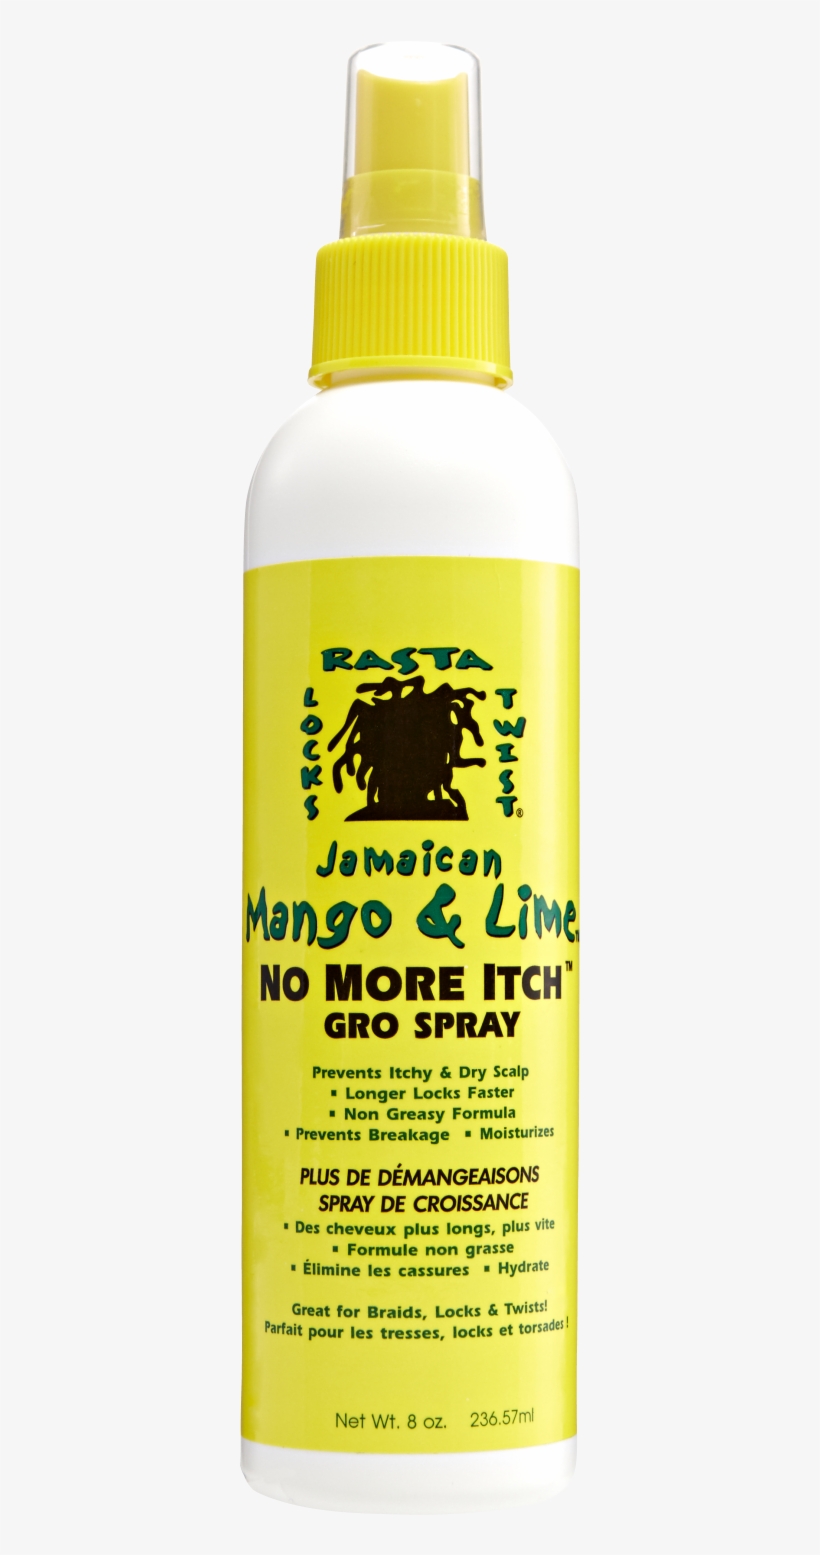 Jamaican Mango & Lime No More Itch Gro Spray 8oz, transparent png #3785974